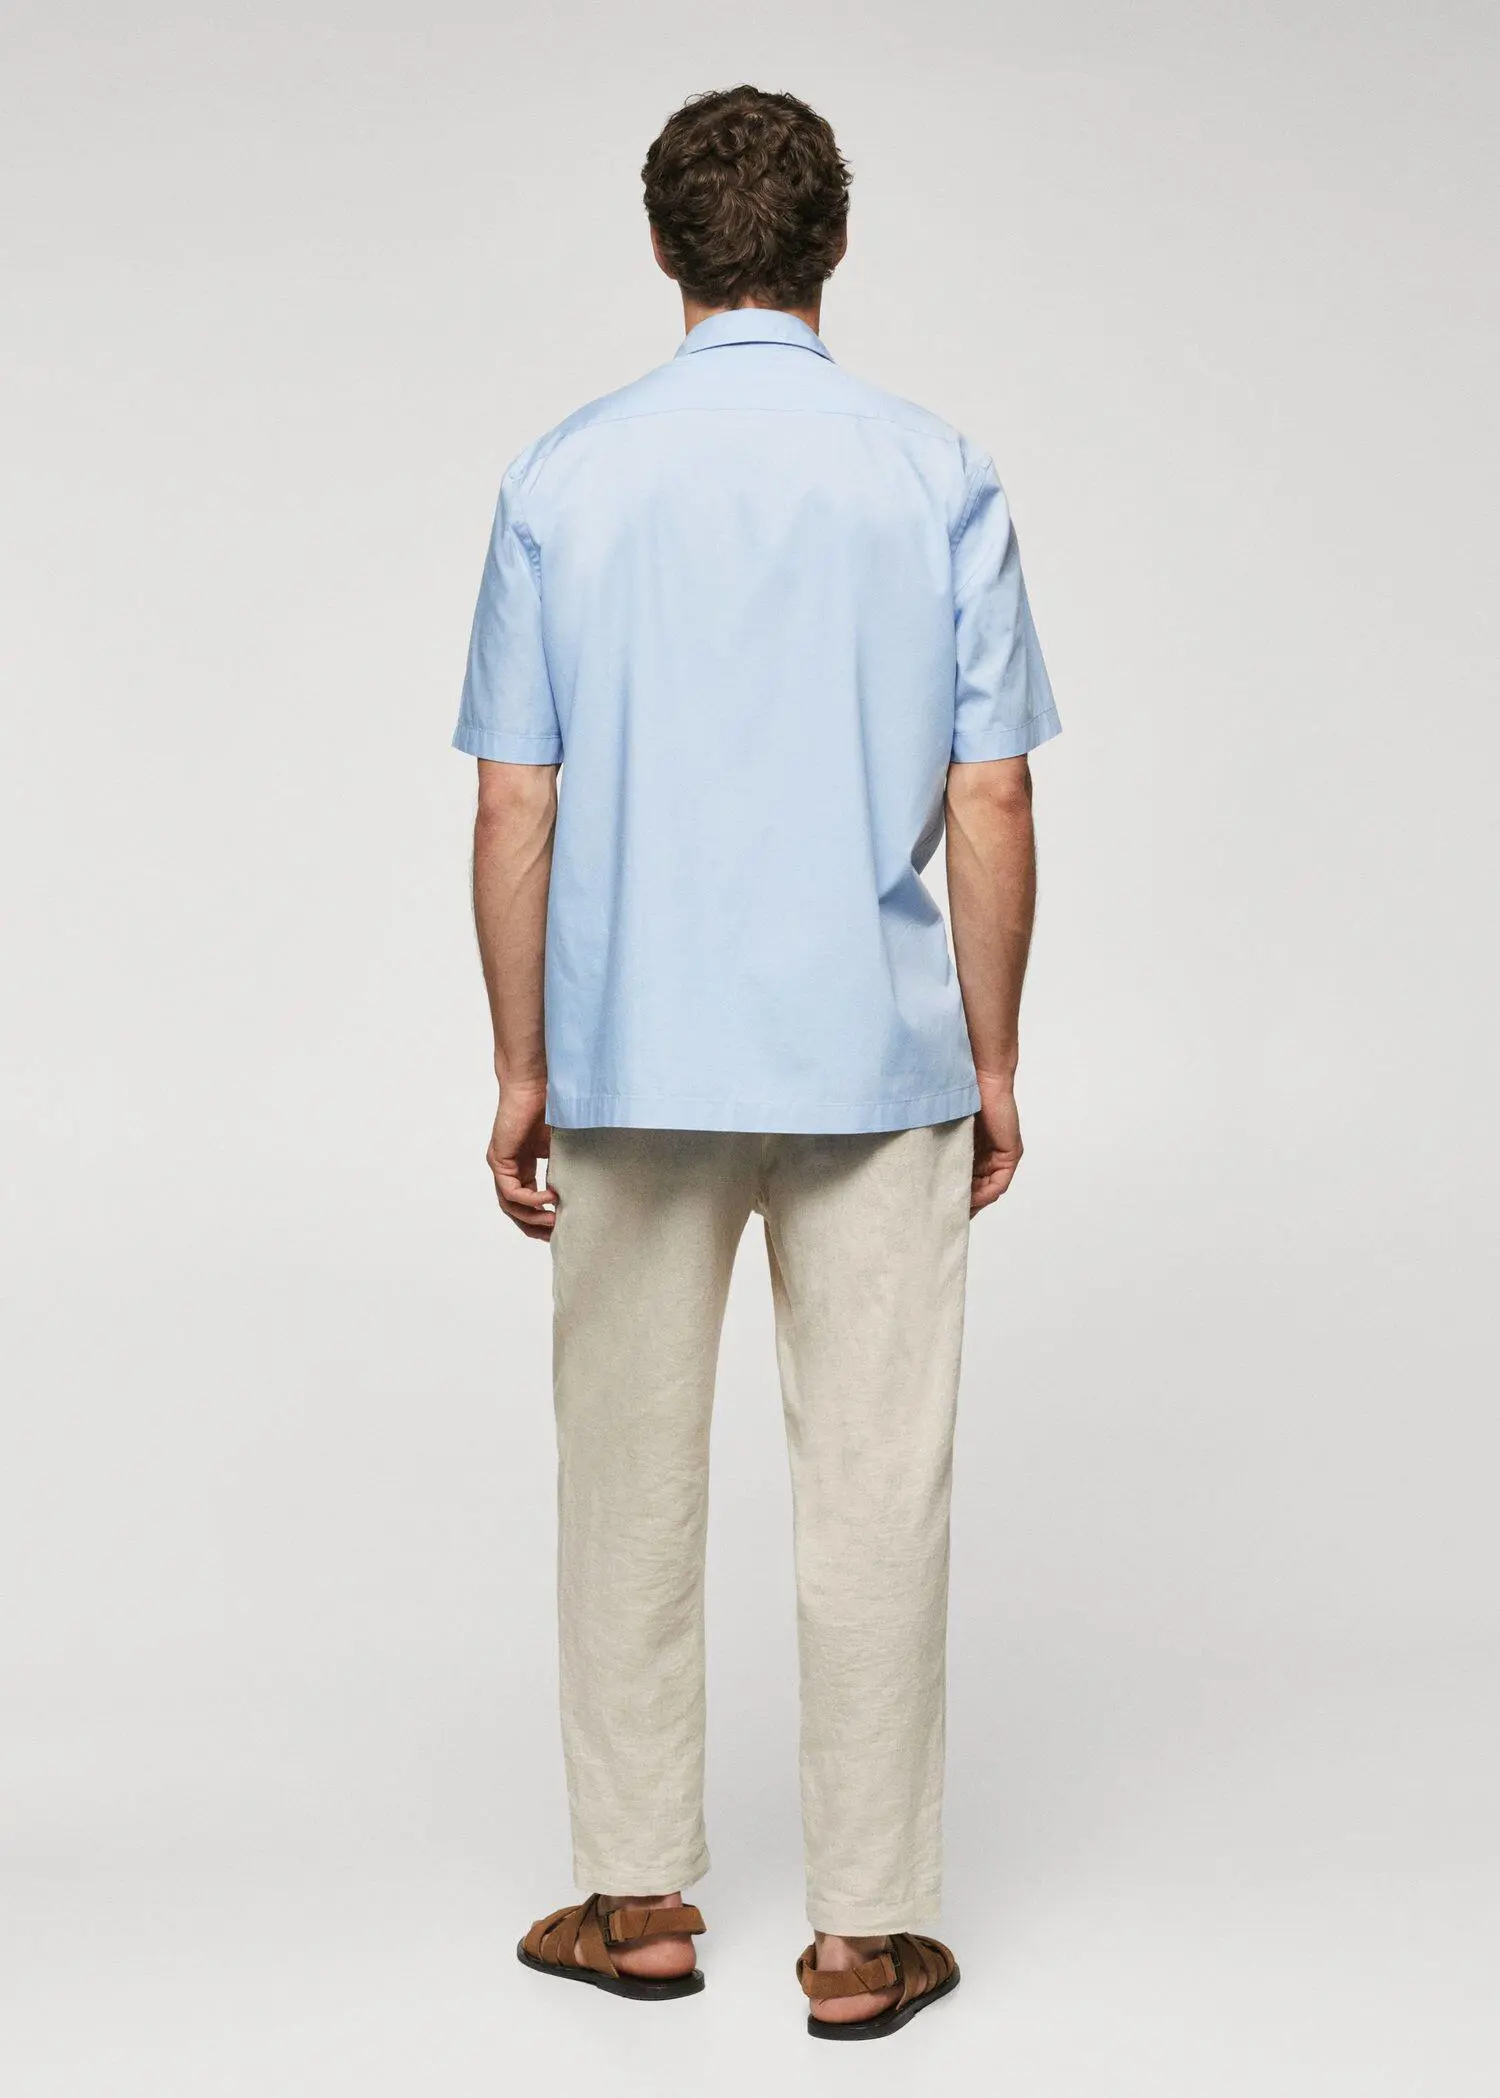 Mango Camisa regular-fit de algodão com manga curta. 3